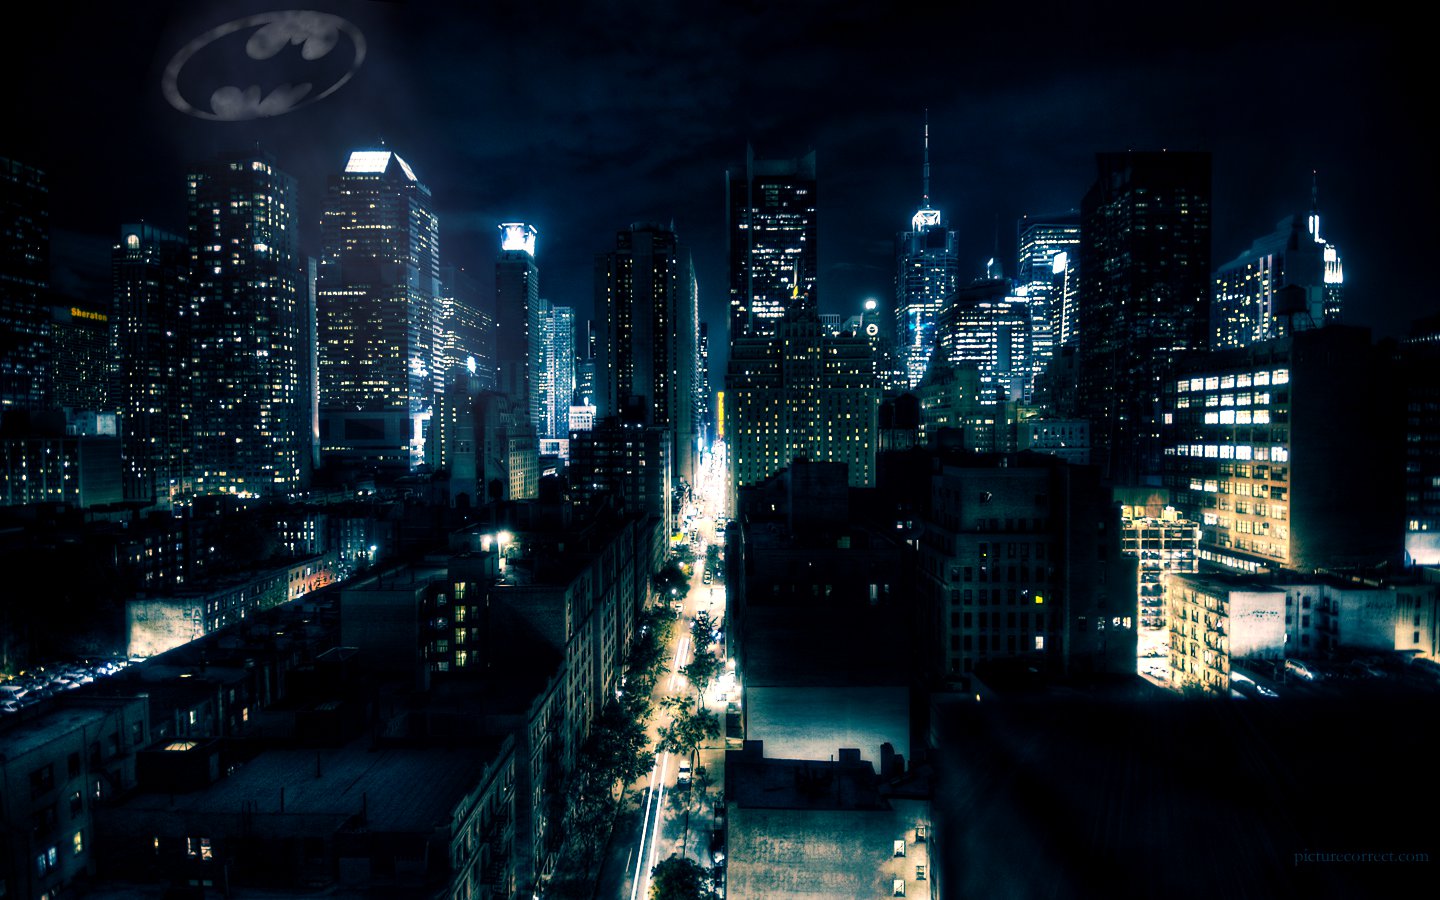 Gotham City by superglamorous on